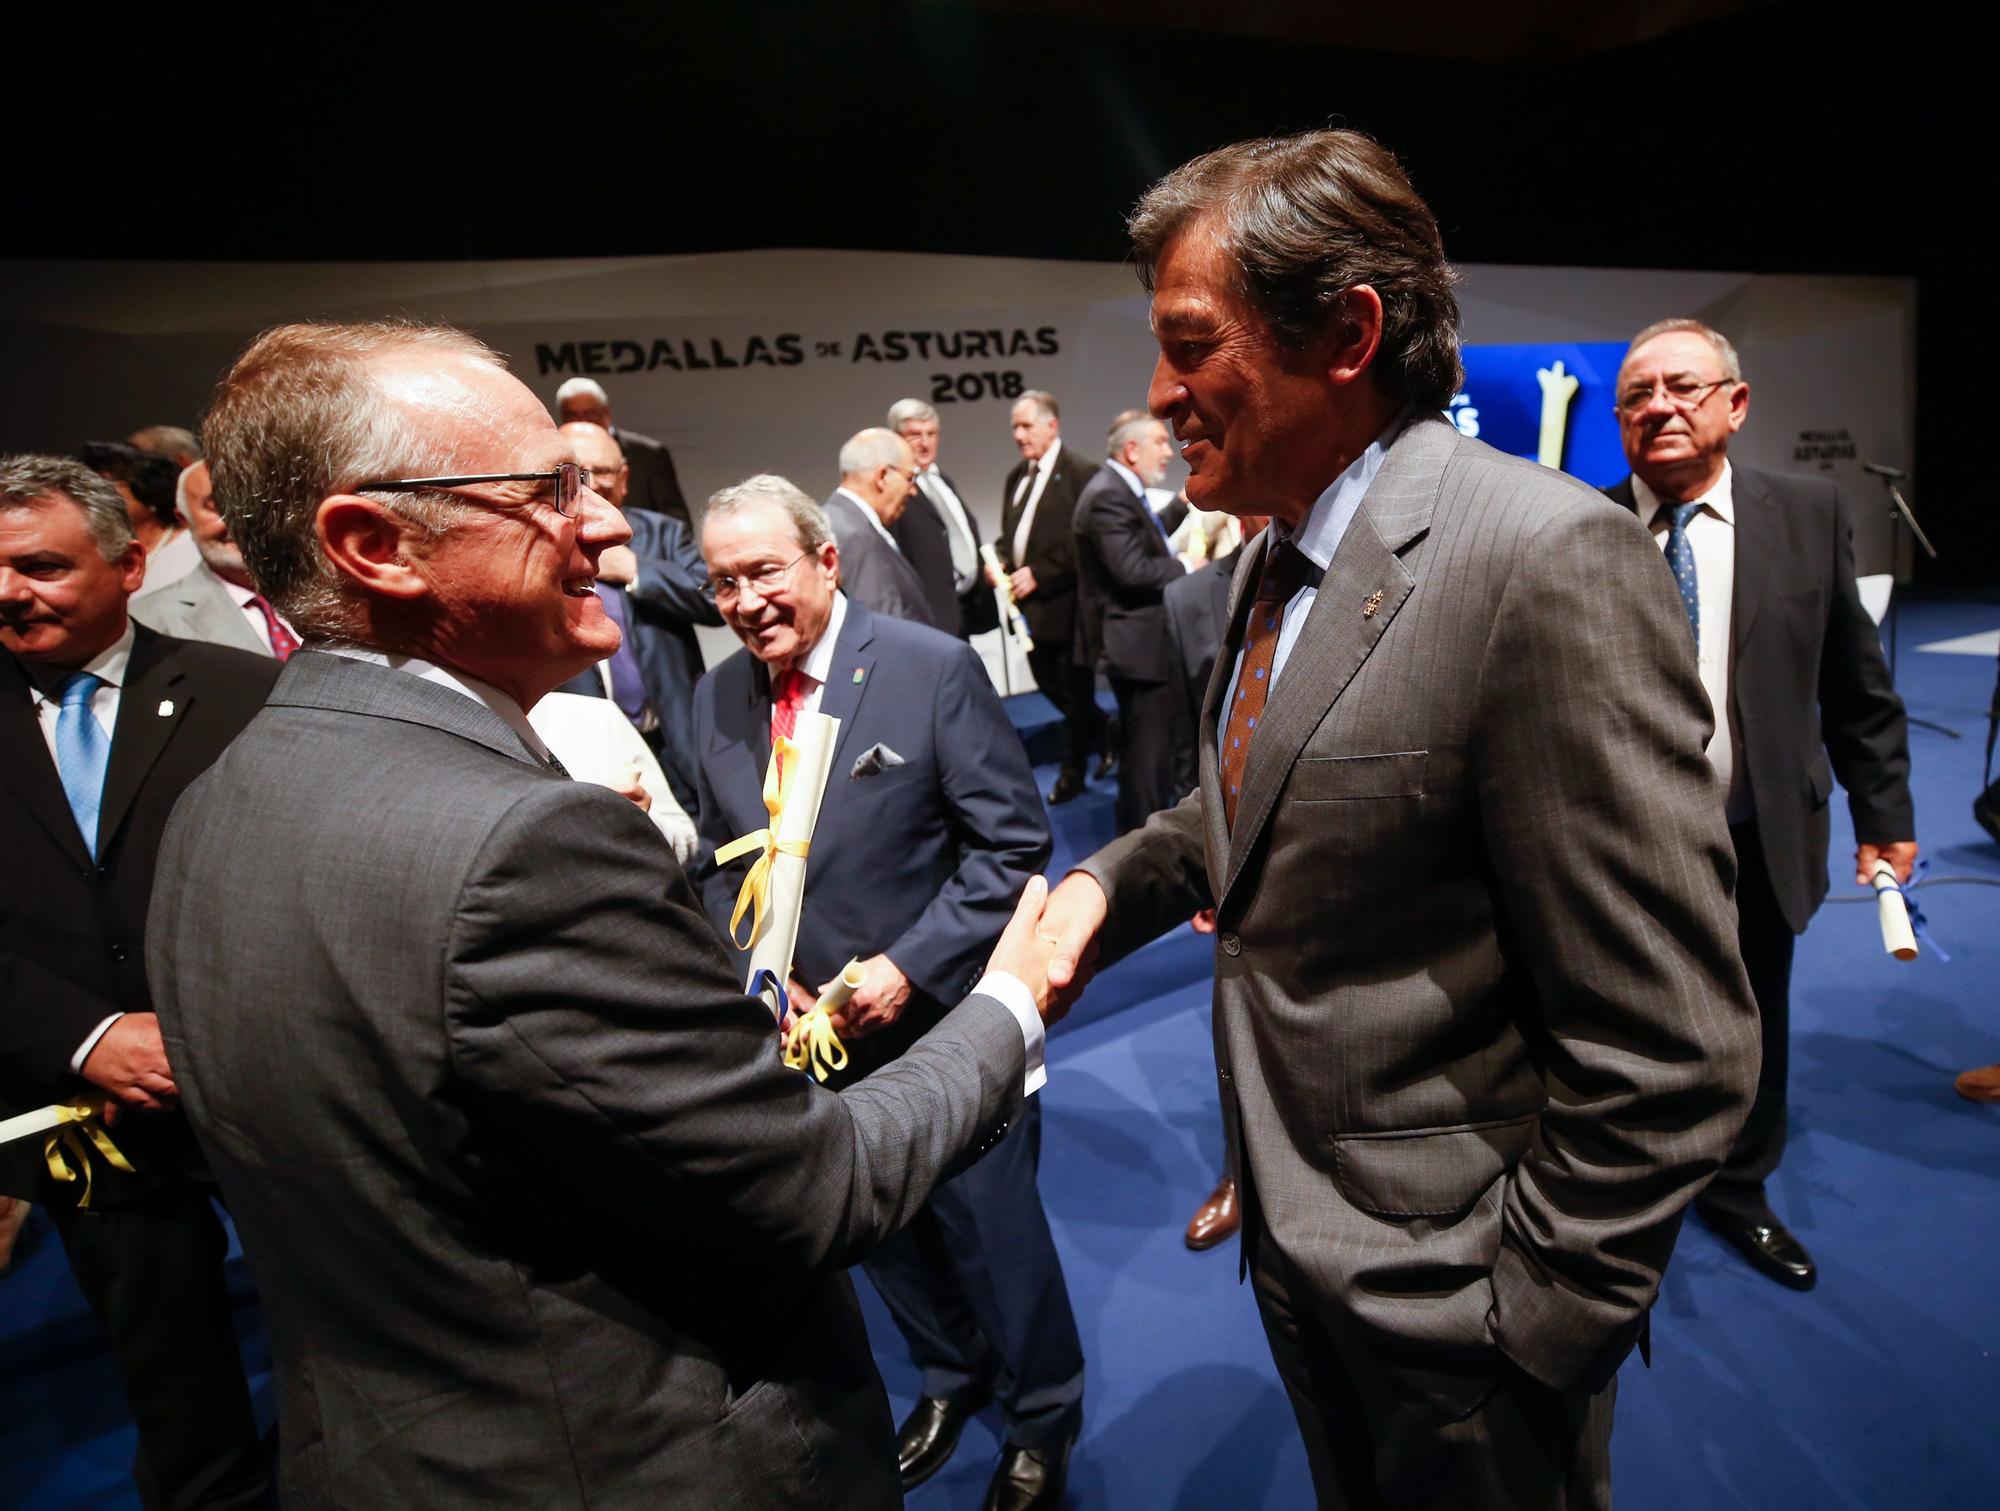 Diego Canga con Javier Fernández en 2018, por entonces presidente del Principado